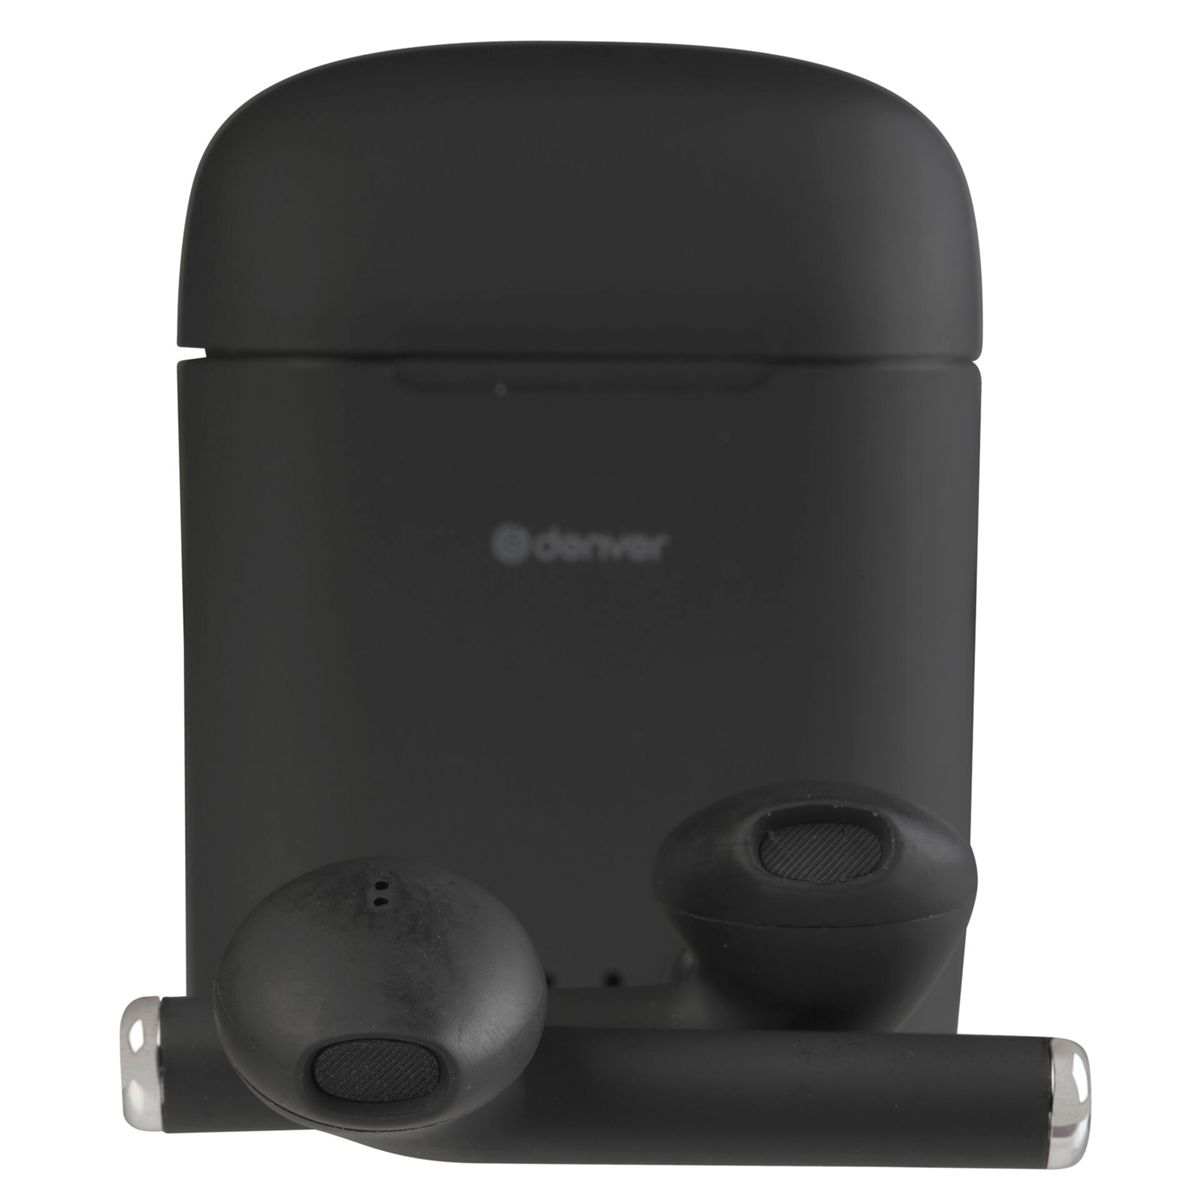 DENVER TWE-46 Schwarz, In-ear schwarz Bluetooth Kopfhörer